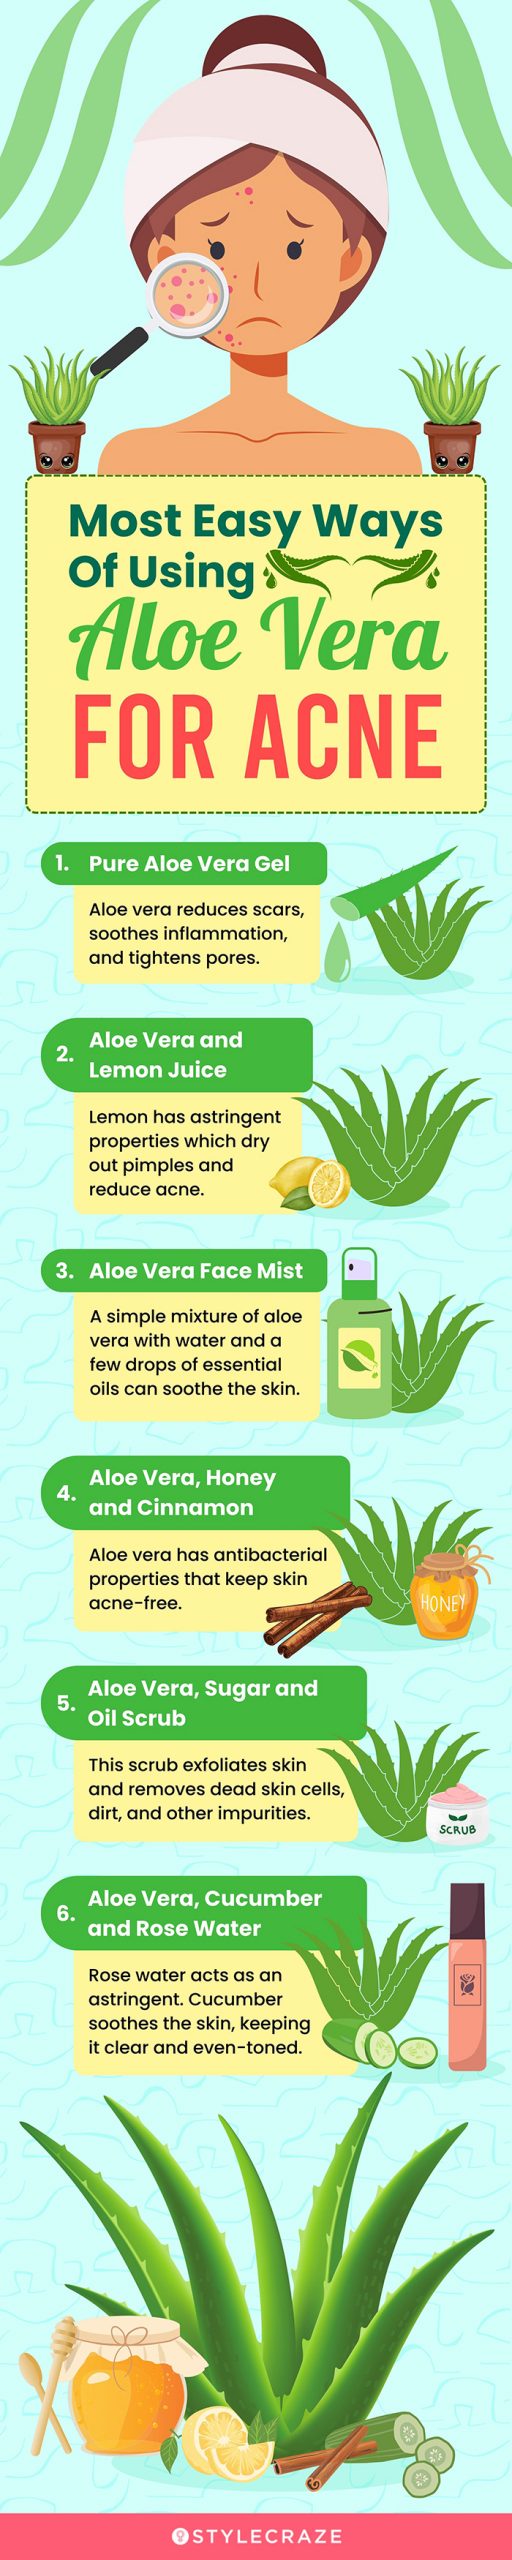 reservoir træk uld over øjnene Afskrække Aloe Vera For Acne: 9 Ways To Use Aloe Vera For Pimples